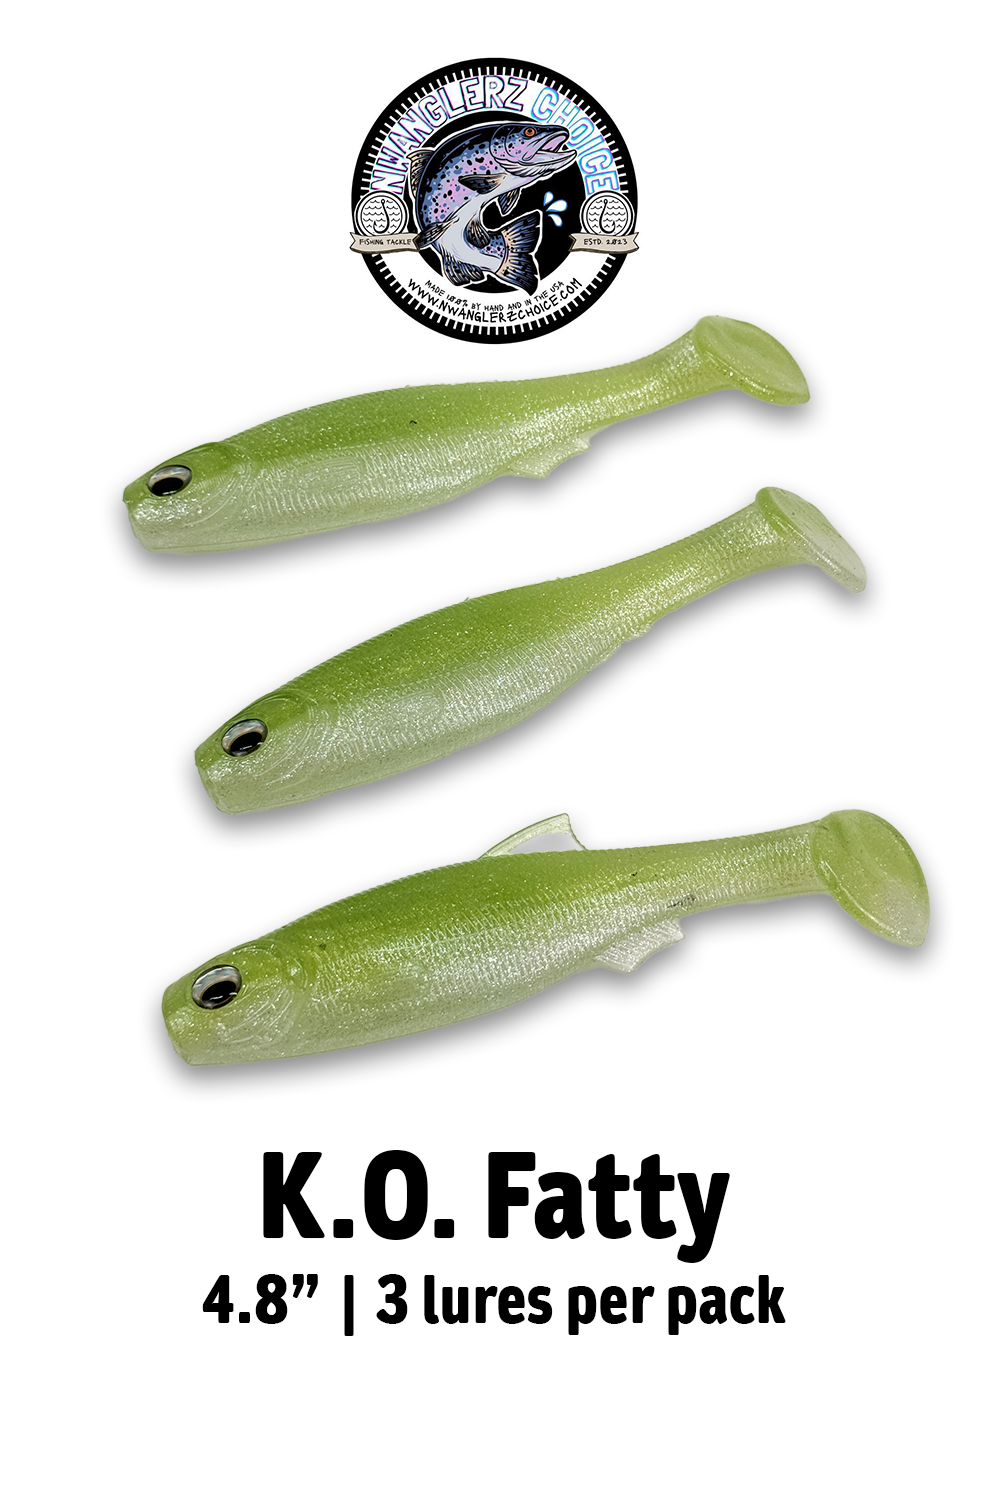 K.O. Fatty - NorthWest Anglerz